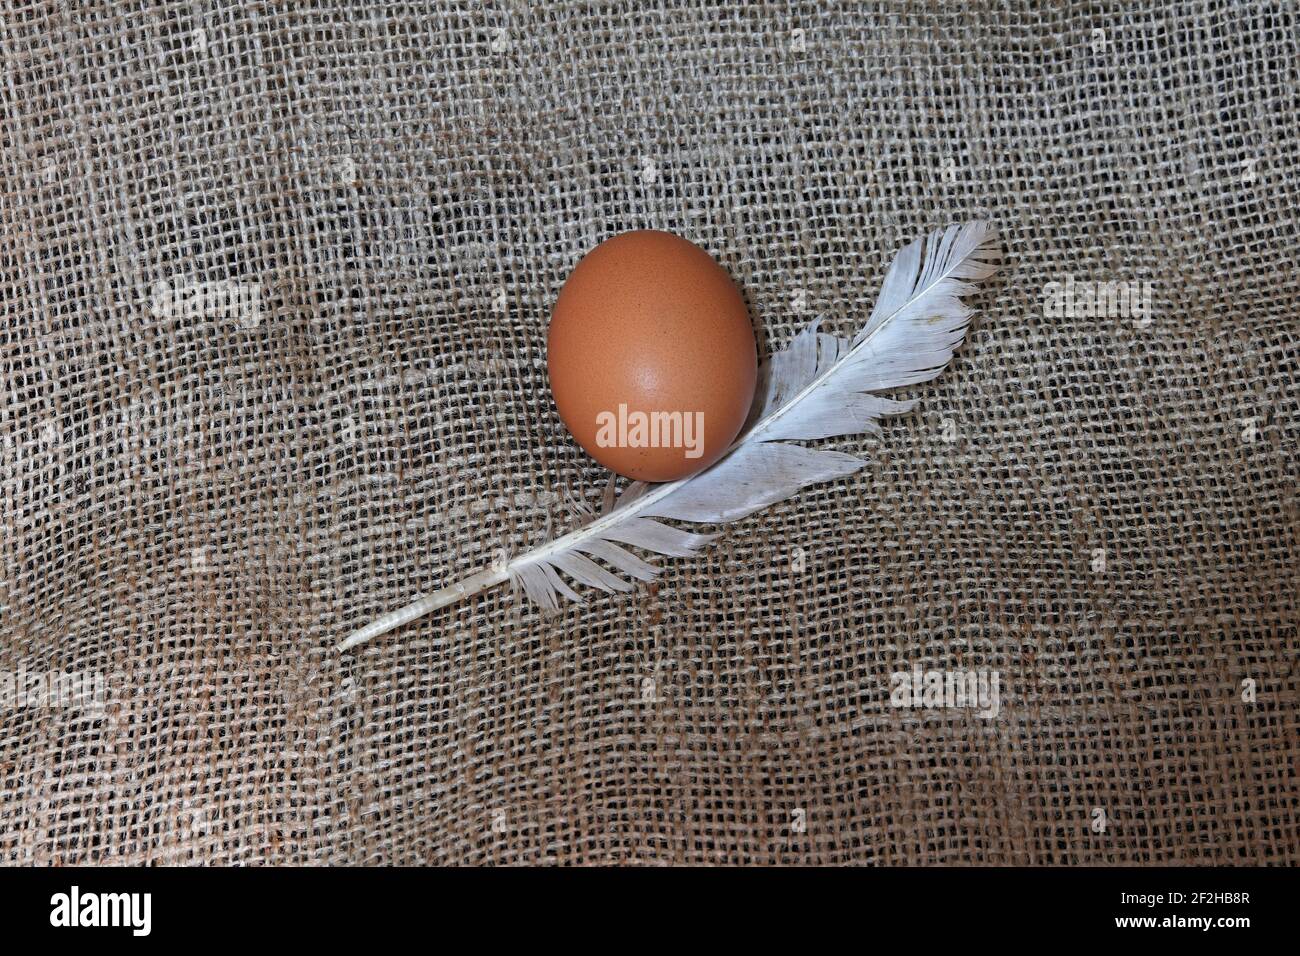 Un œuf de poulet bio frais et une plume sur toile de jute tissu Banque D'Images